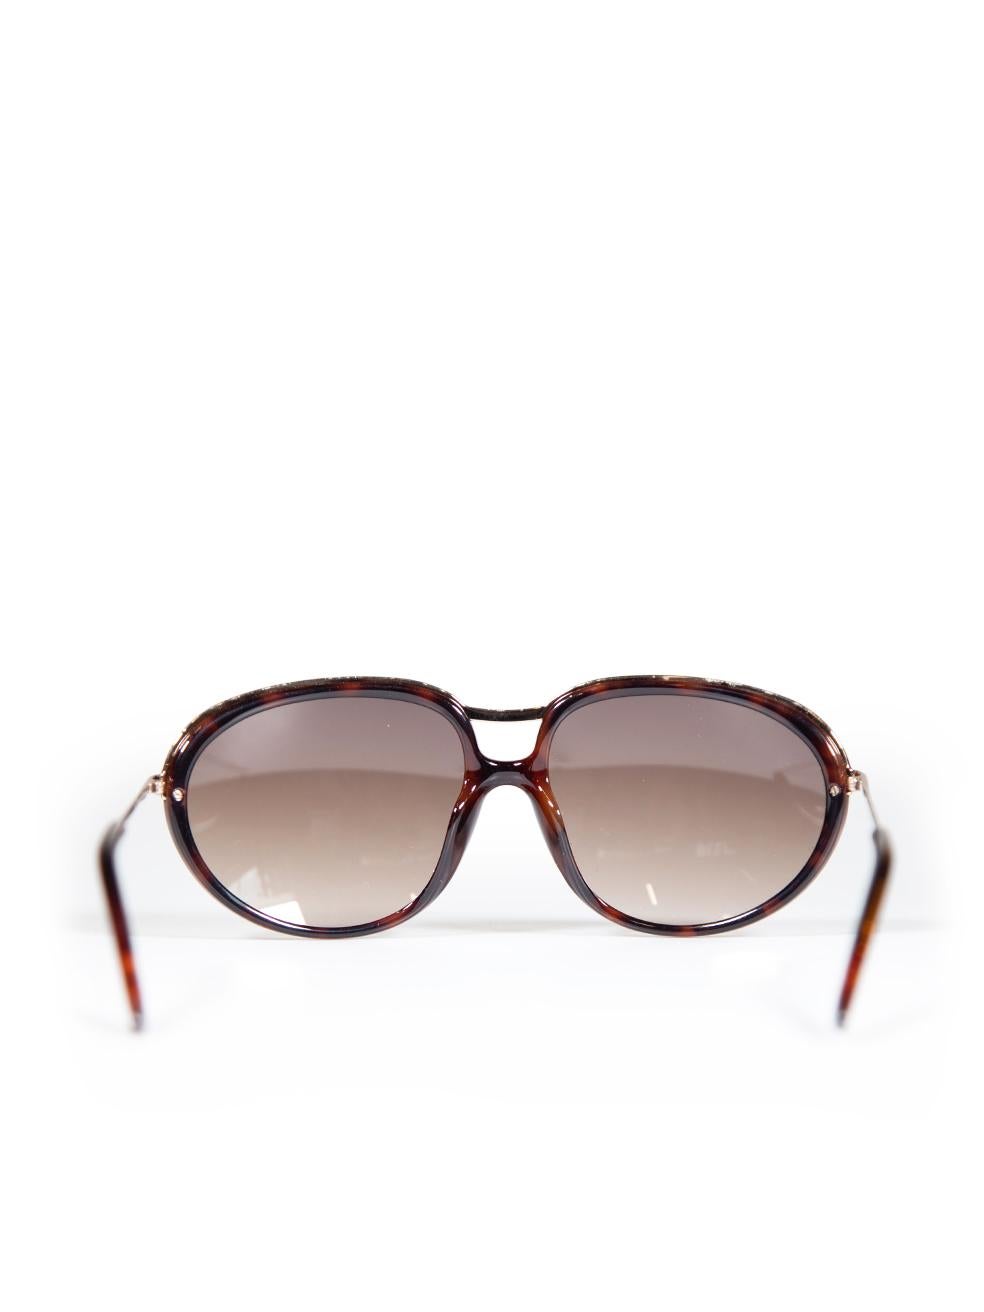 Women's Tom Ford Dark Havana Gradient Sunglasses For Sale